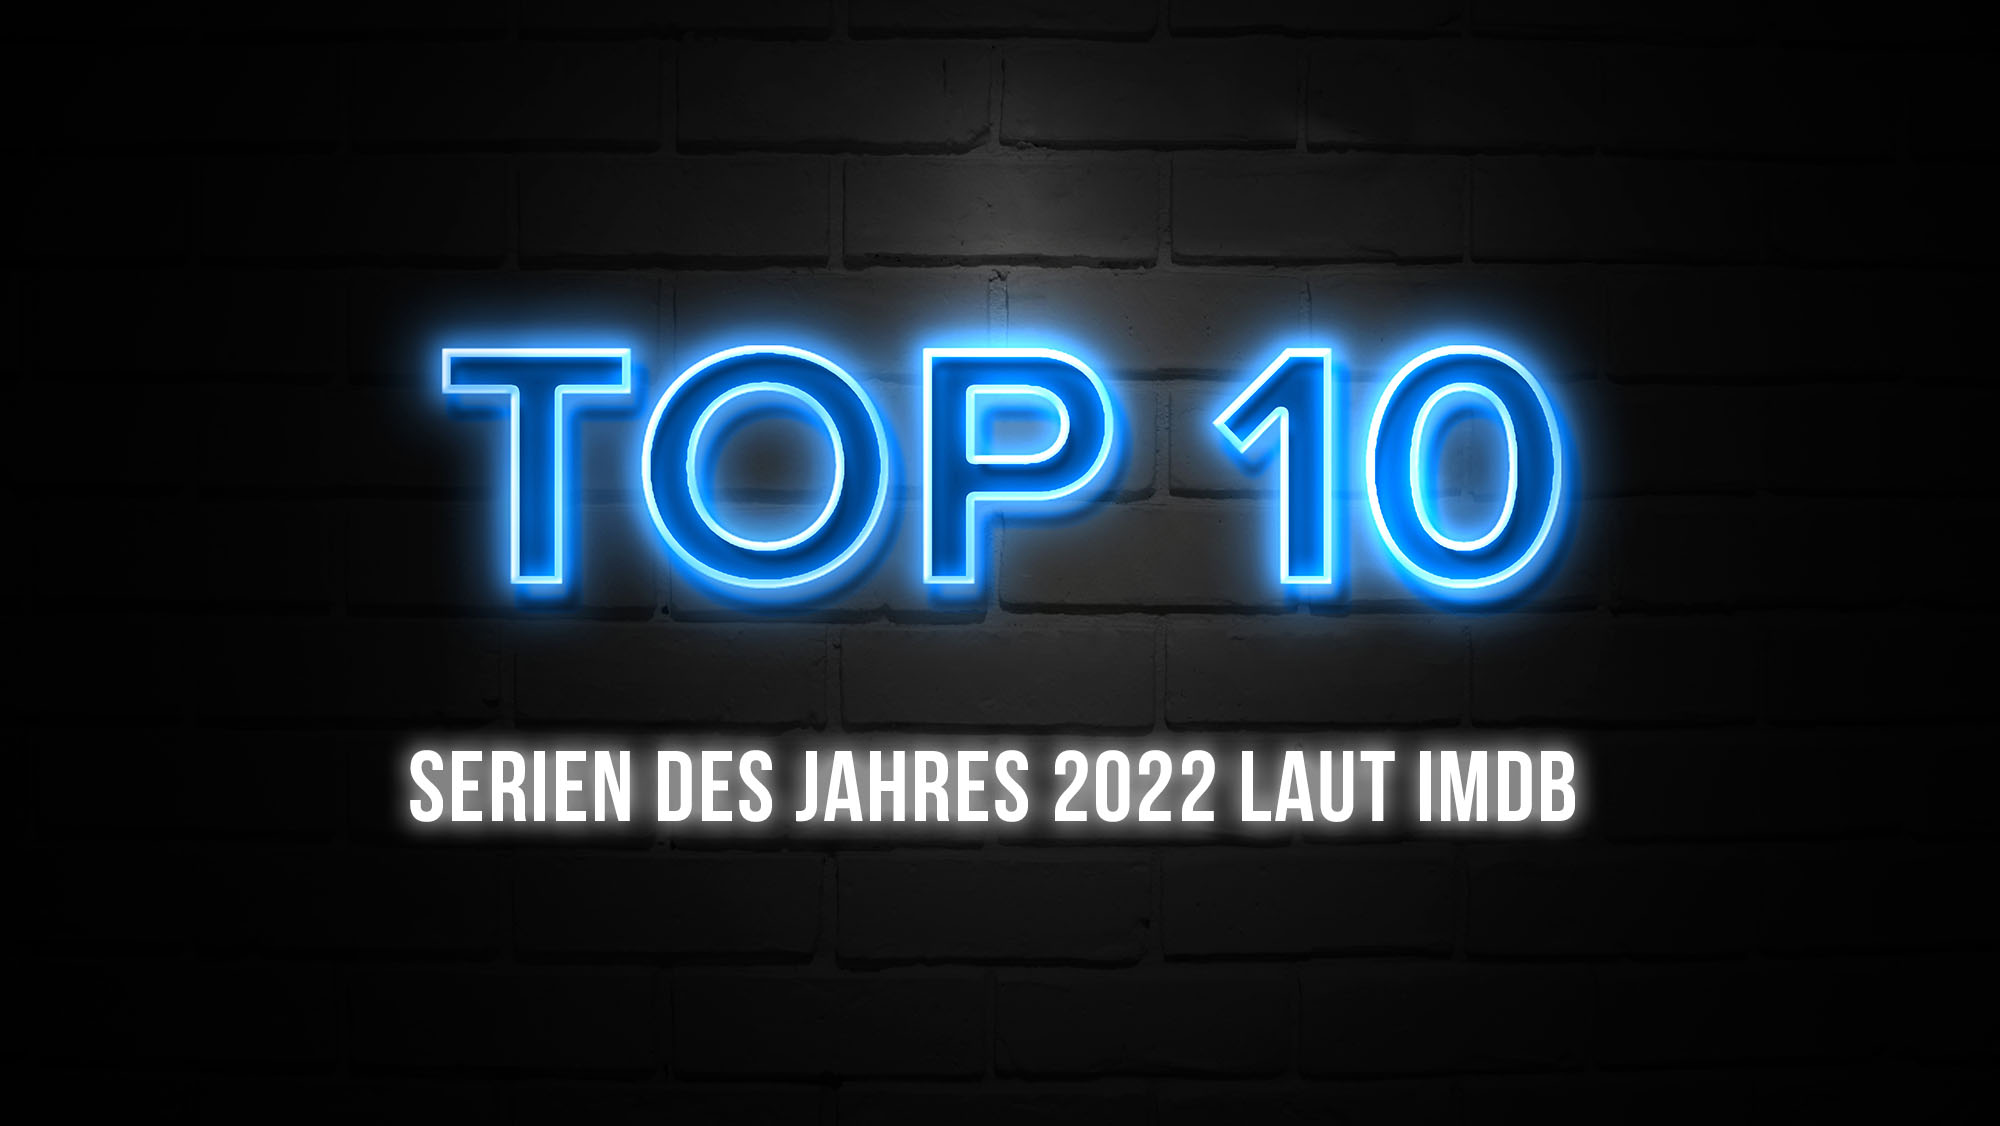 TOP 10: Die besten Serien des Jahres 2022 laut IMDb